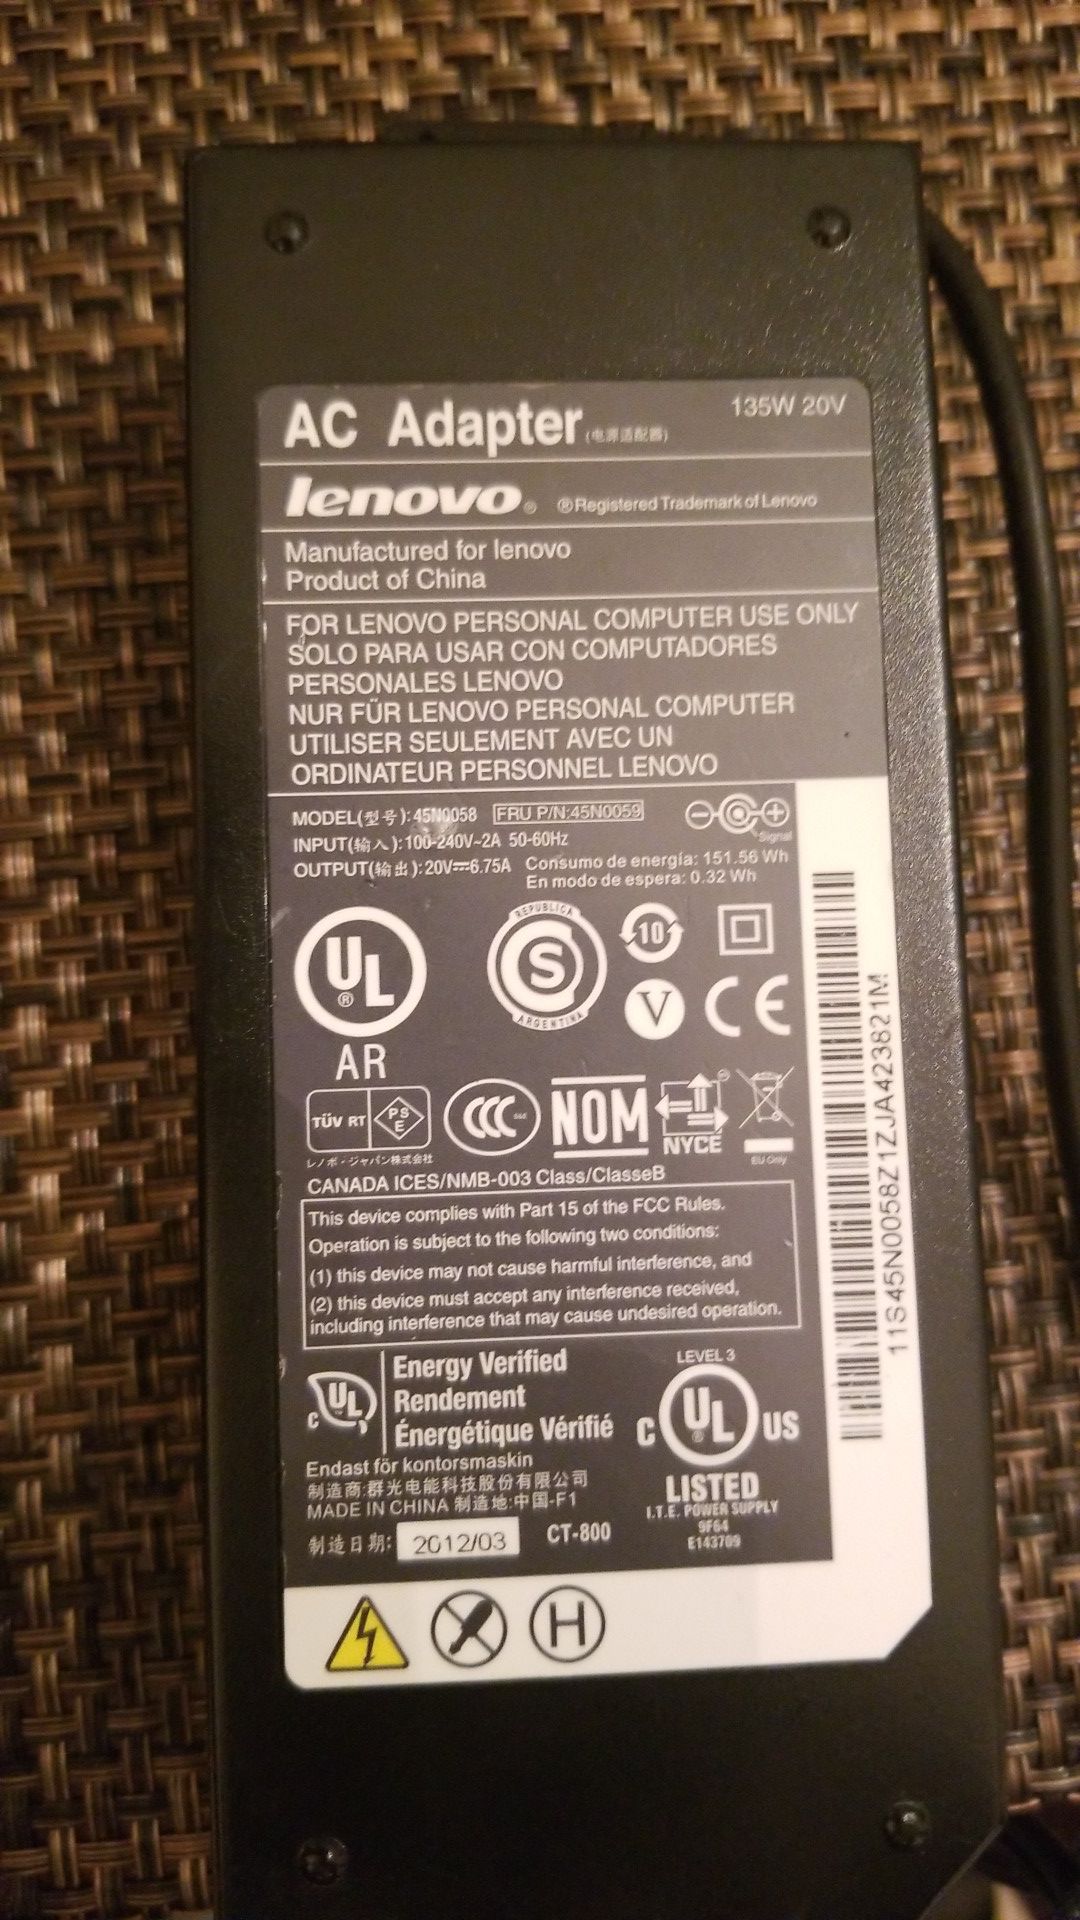 Genuine Lenovo Laptop 135 Watt Power Charger